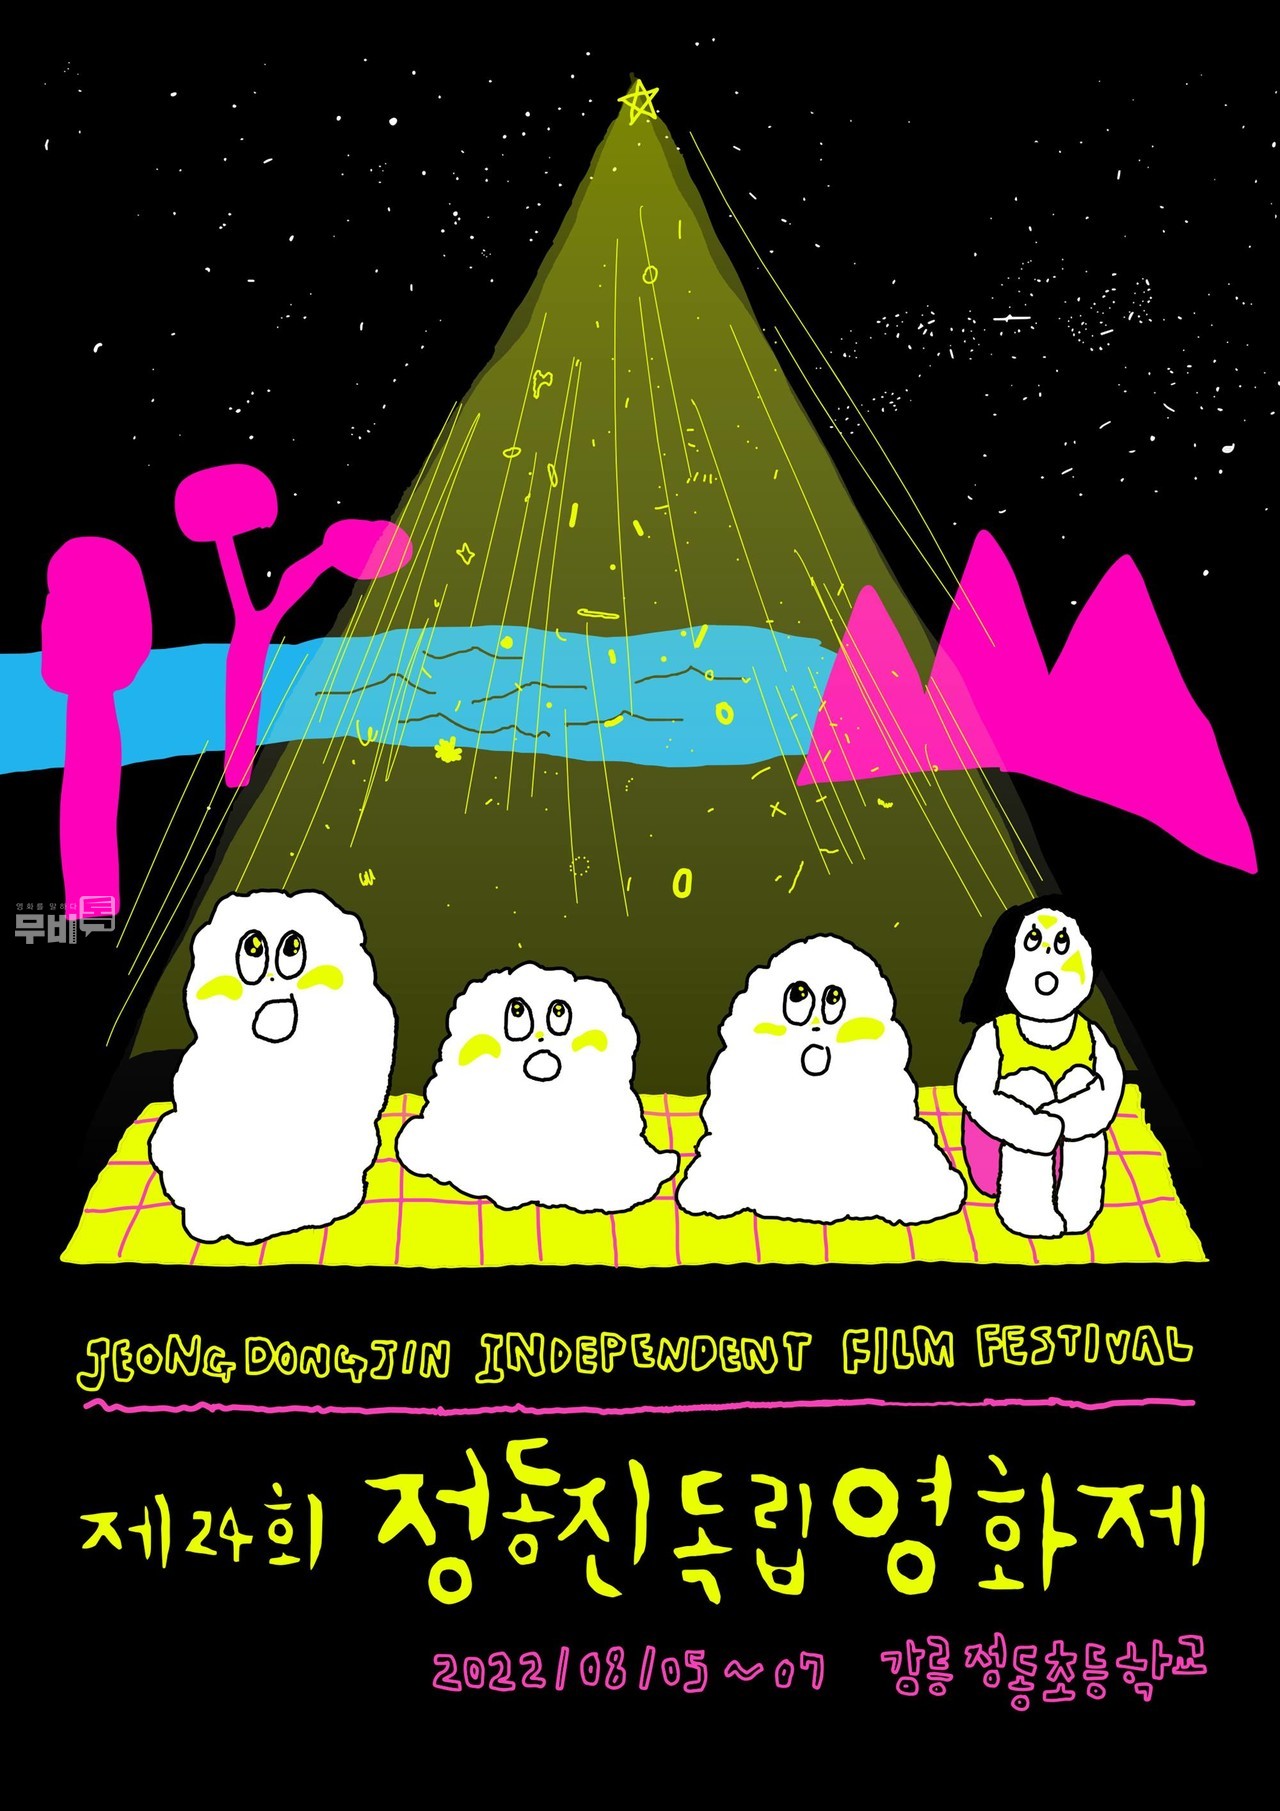 포스터= 제24회 정동진독립영화제